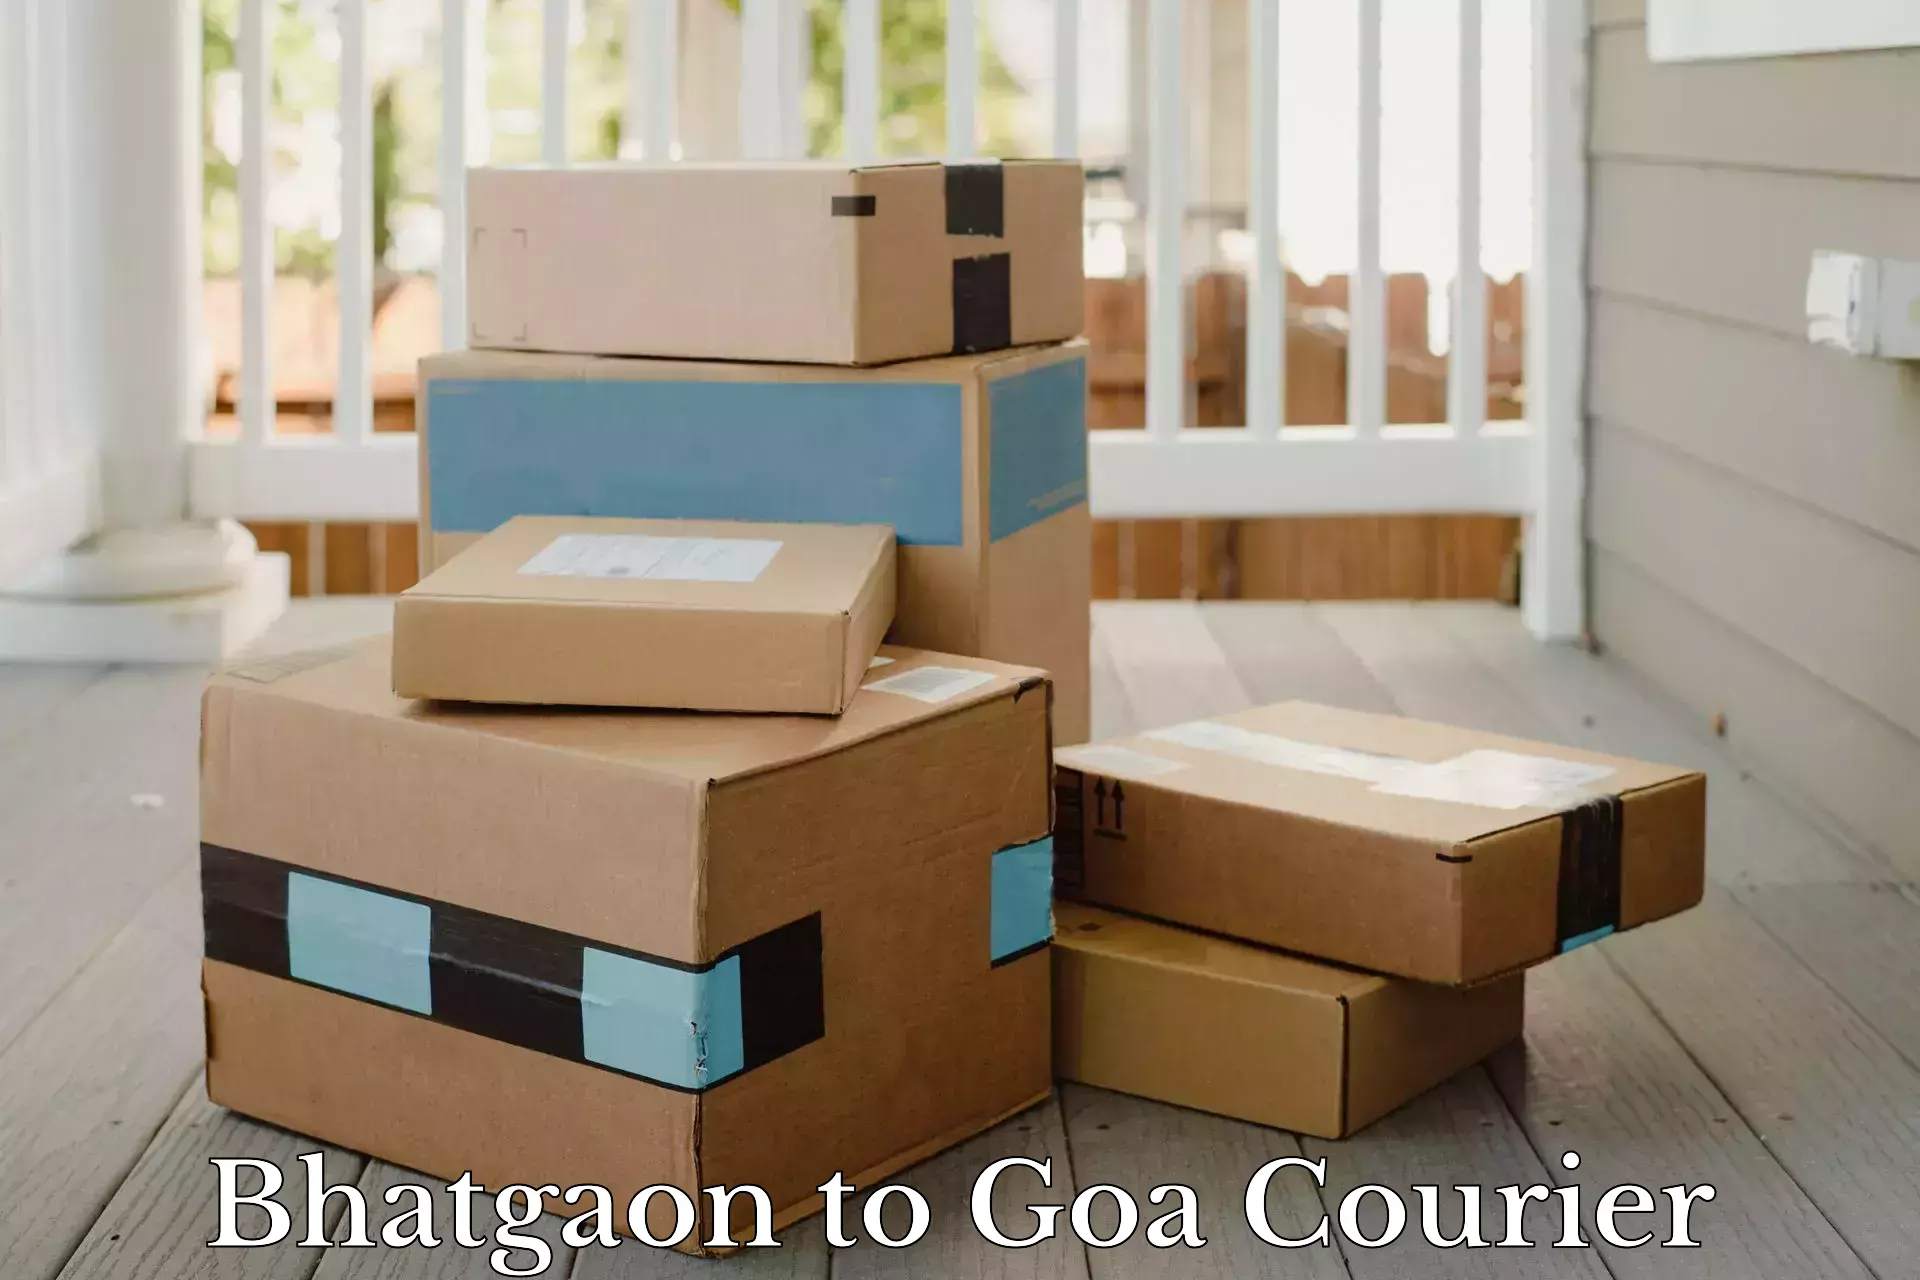 Global shipping solutions Bhatgaon to IIT Goa